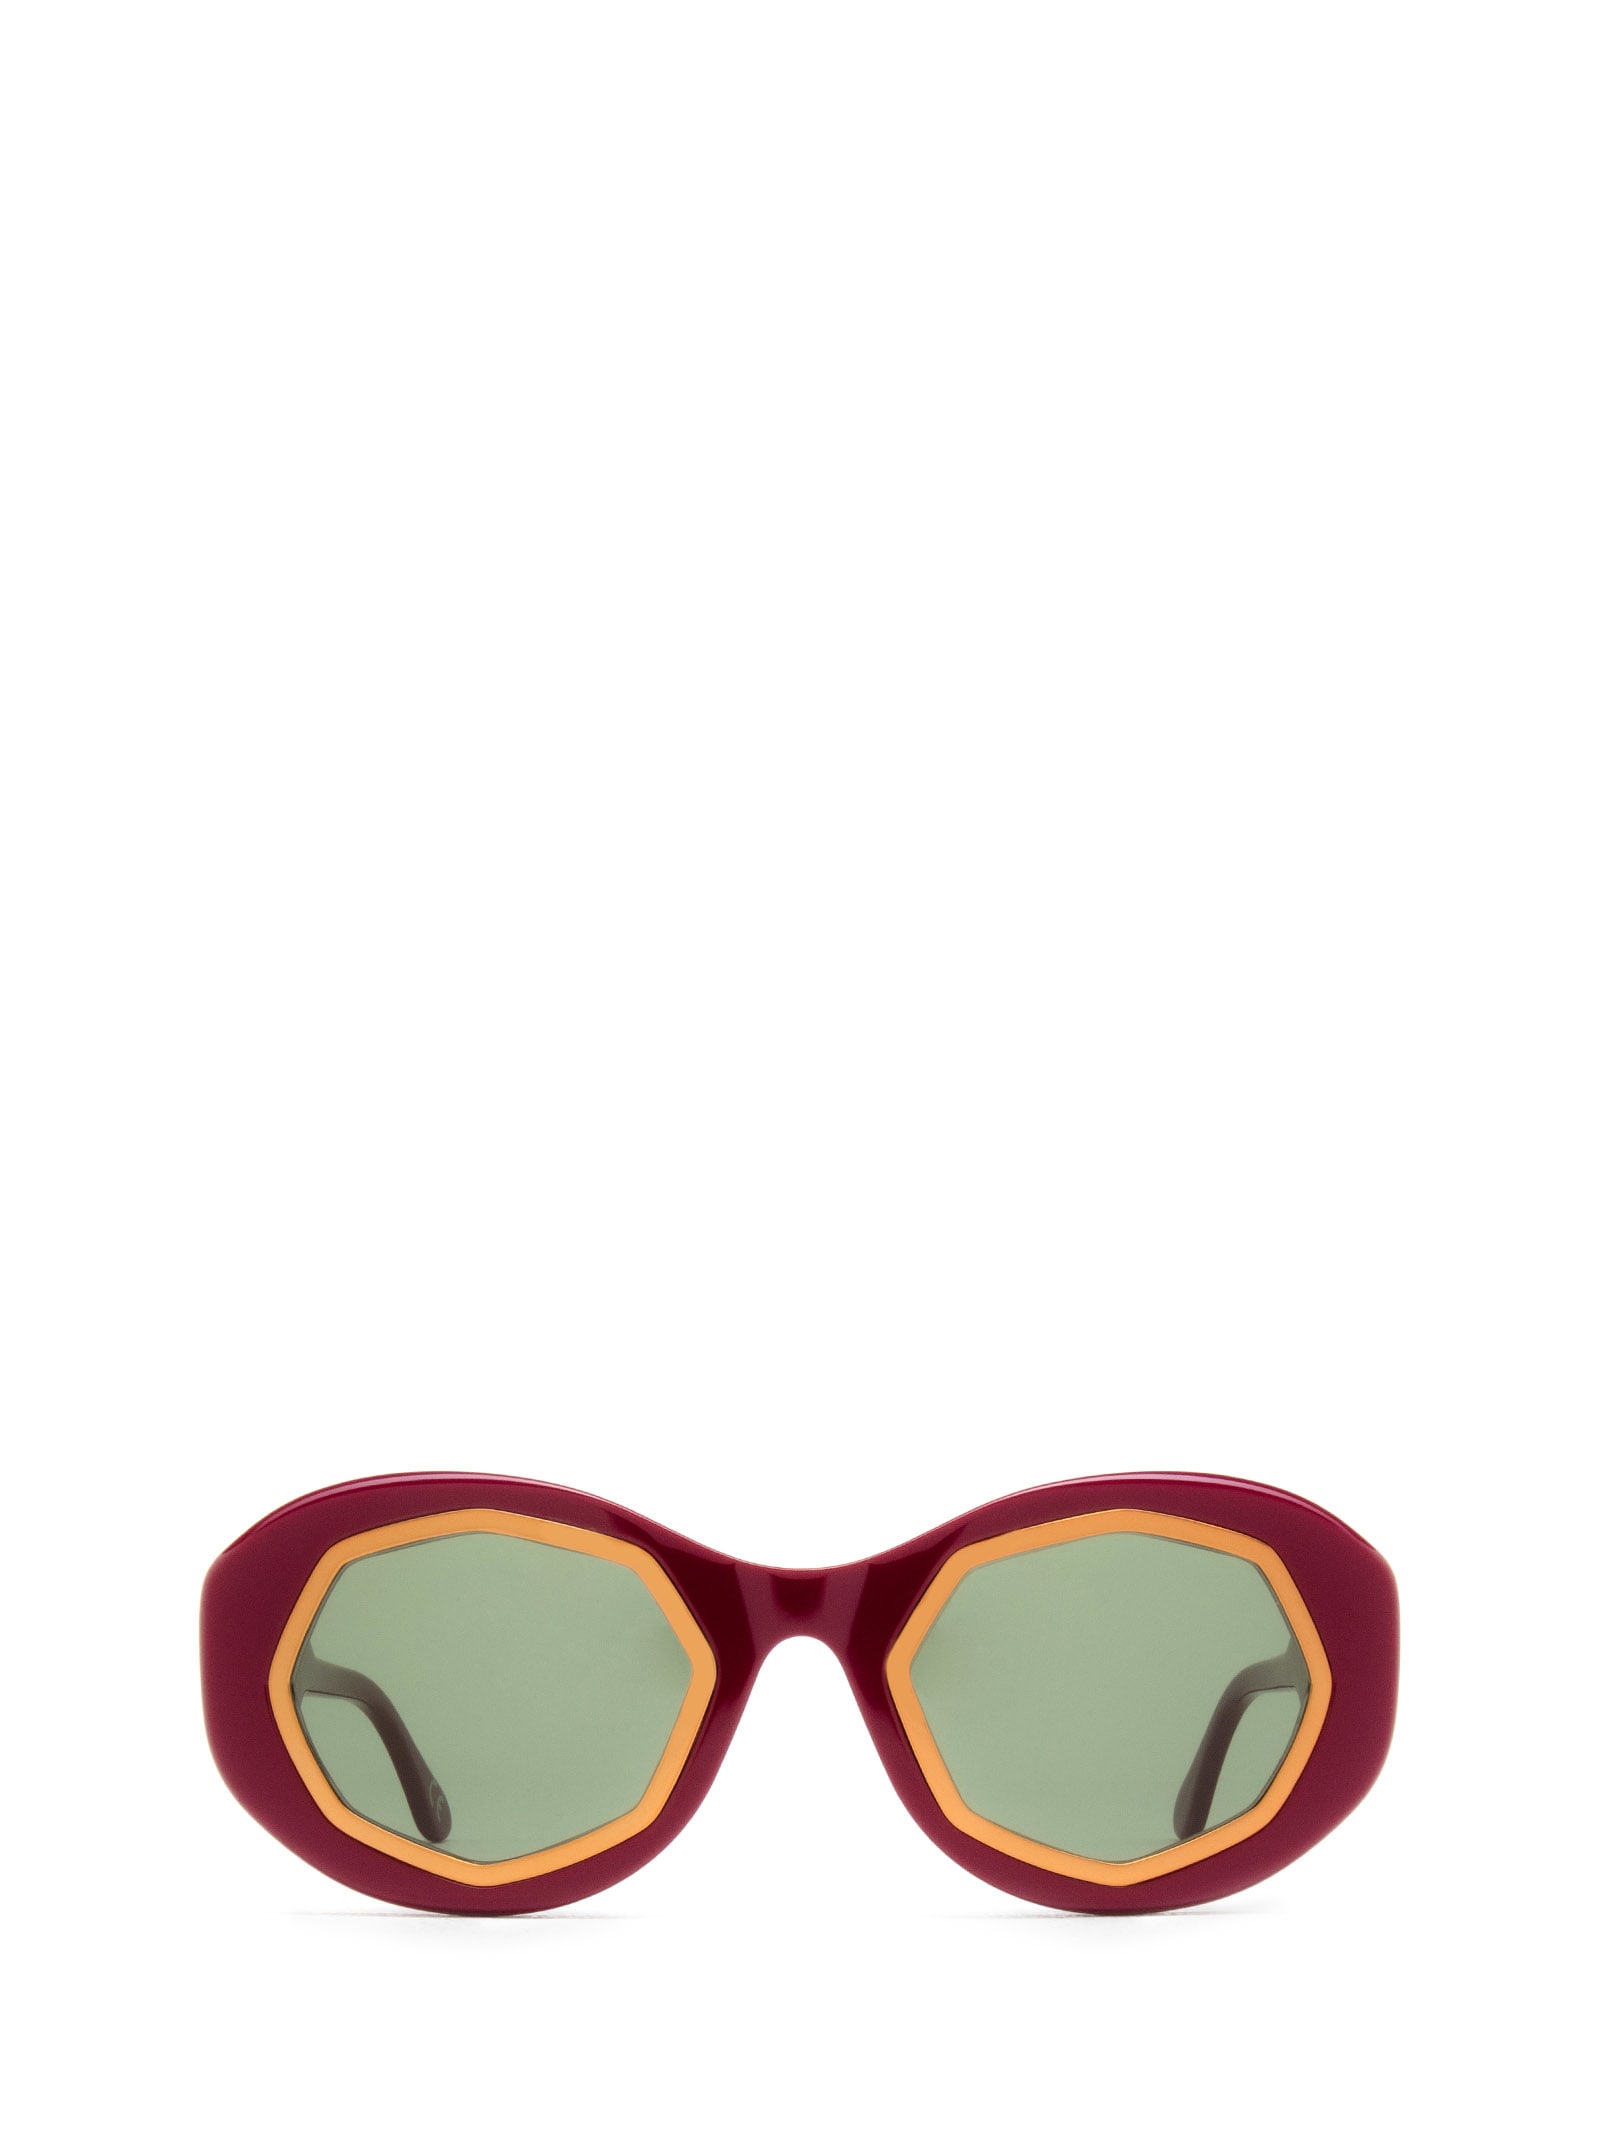 Mount Bromo Bordeaux Sunglasses